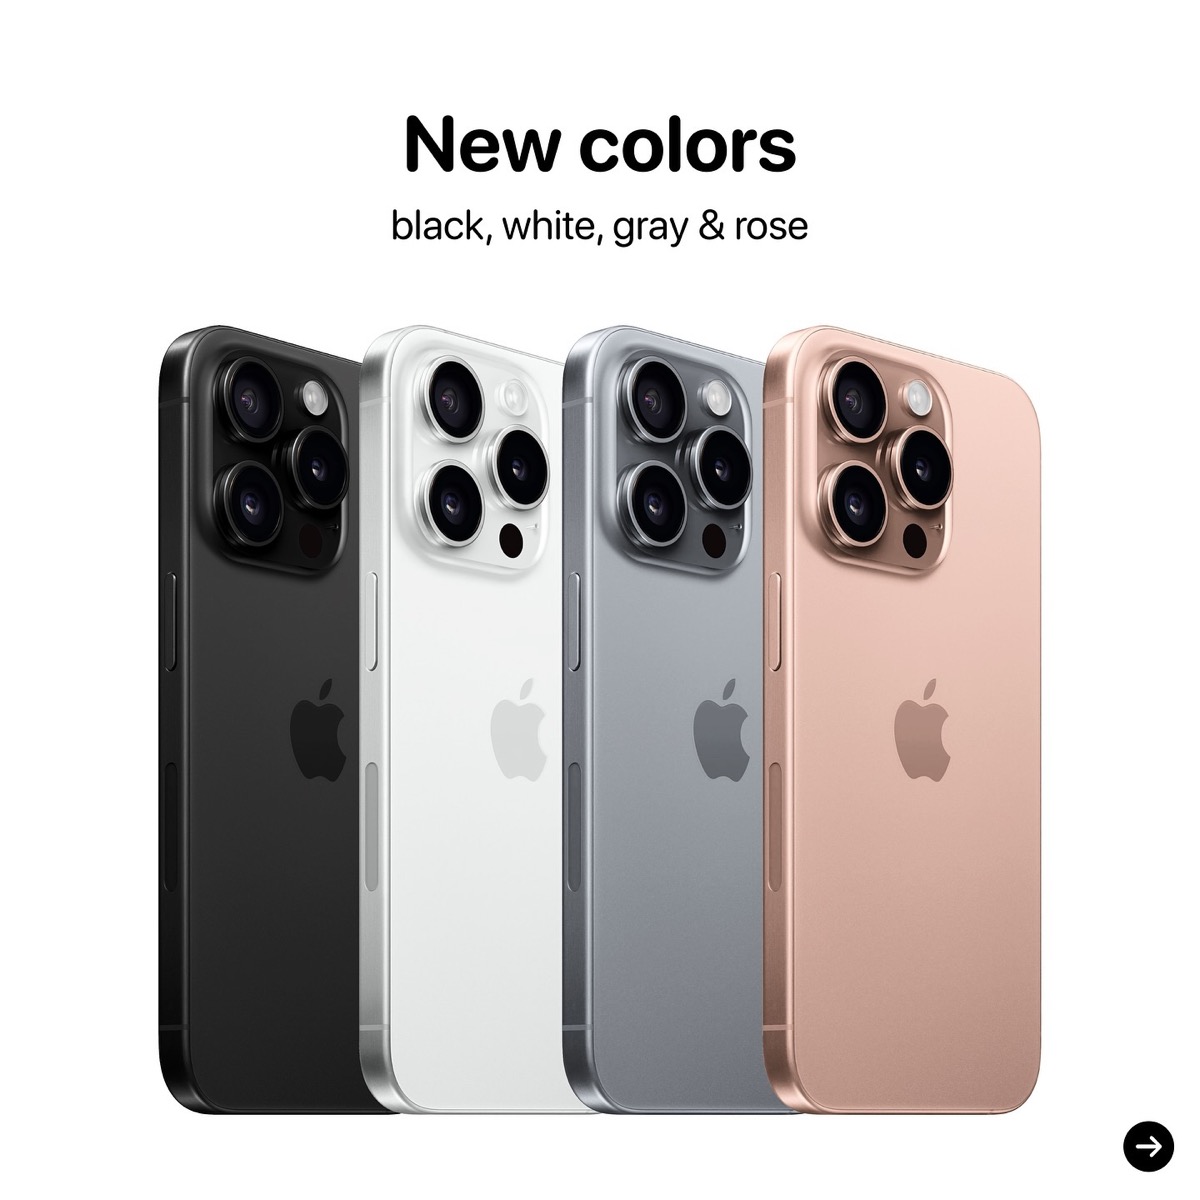 iPhone16 Proに寒色系の新色なし確定？iPhone6sと異なるローズ追加？